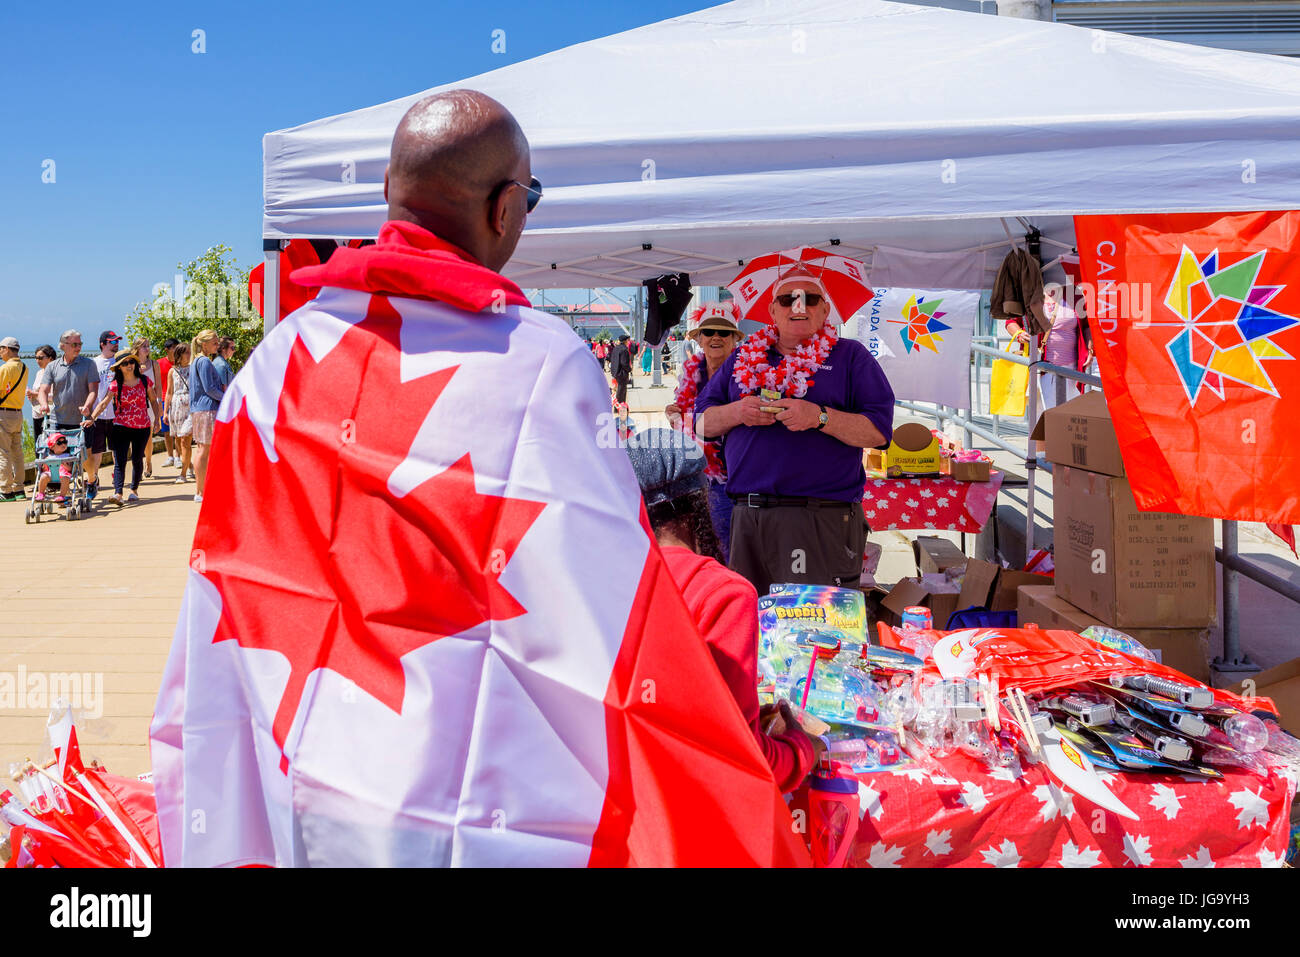 Mann mit kanadischer Flagge, Canada Day, Village of Steveston, Richmond, British Columbia, Kanada. Stockfoto